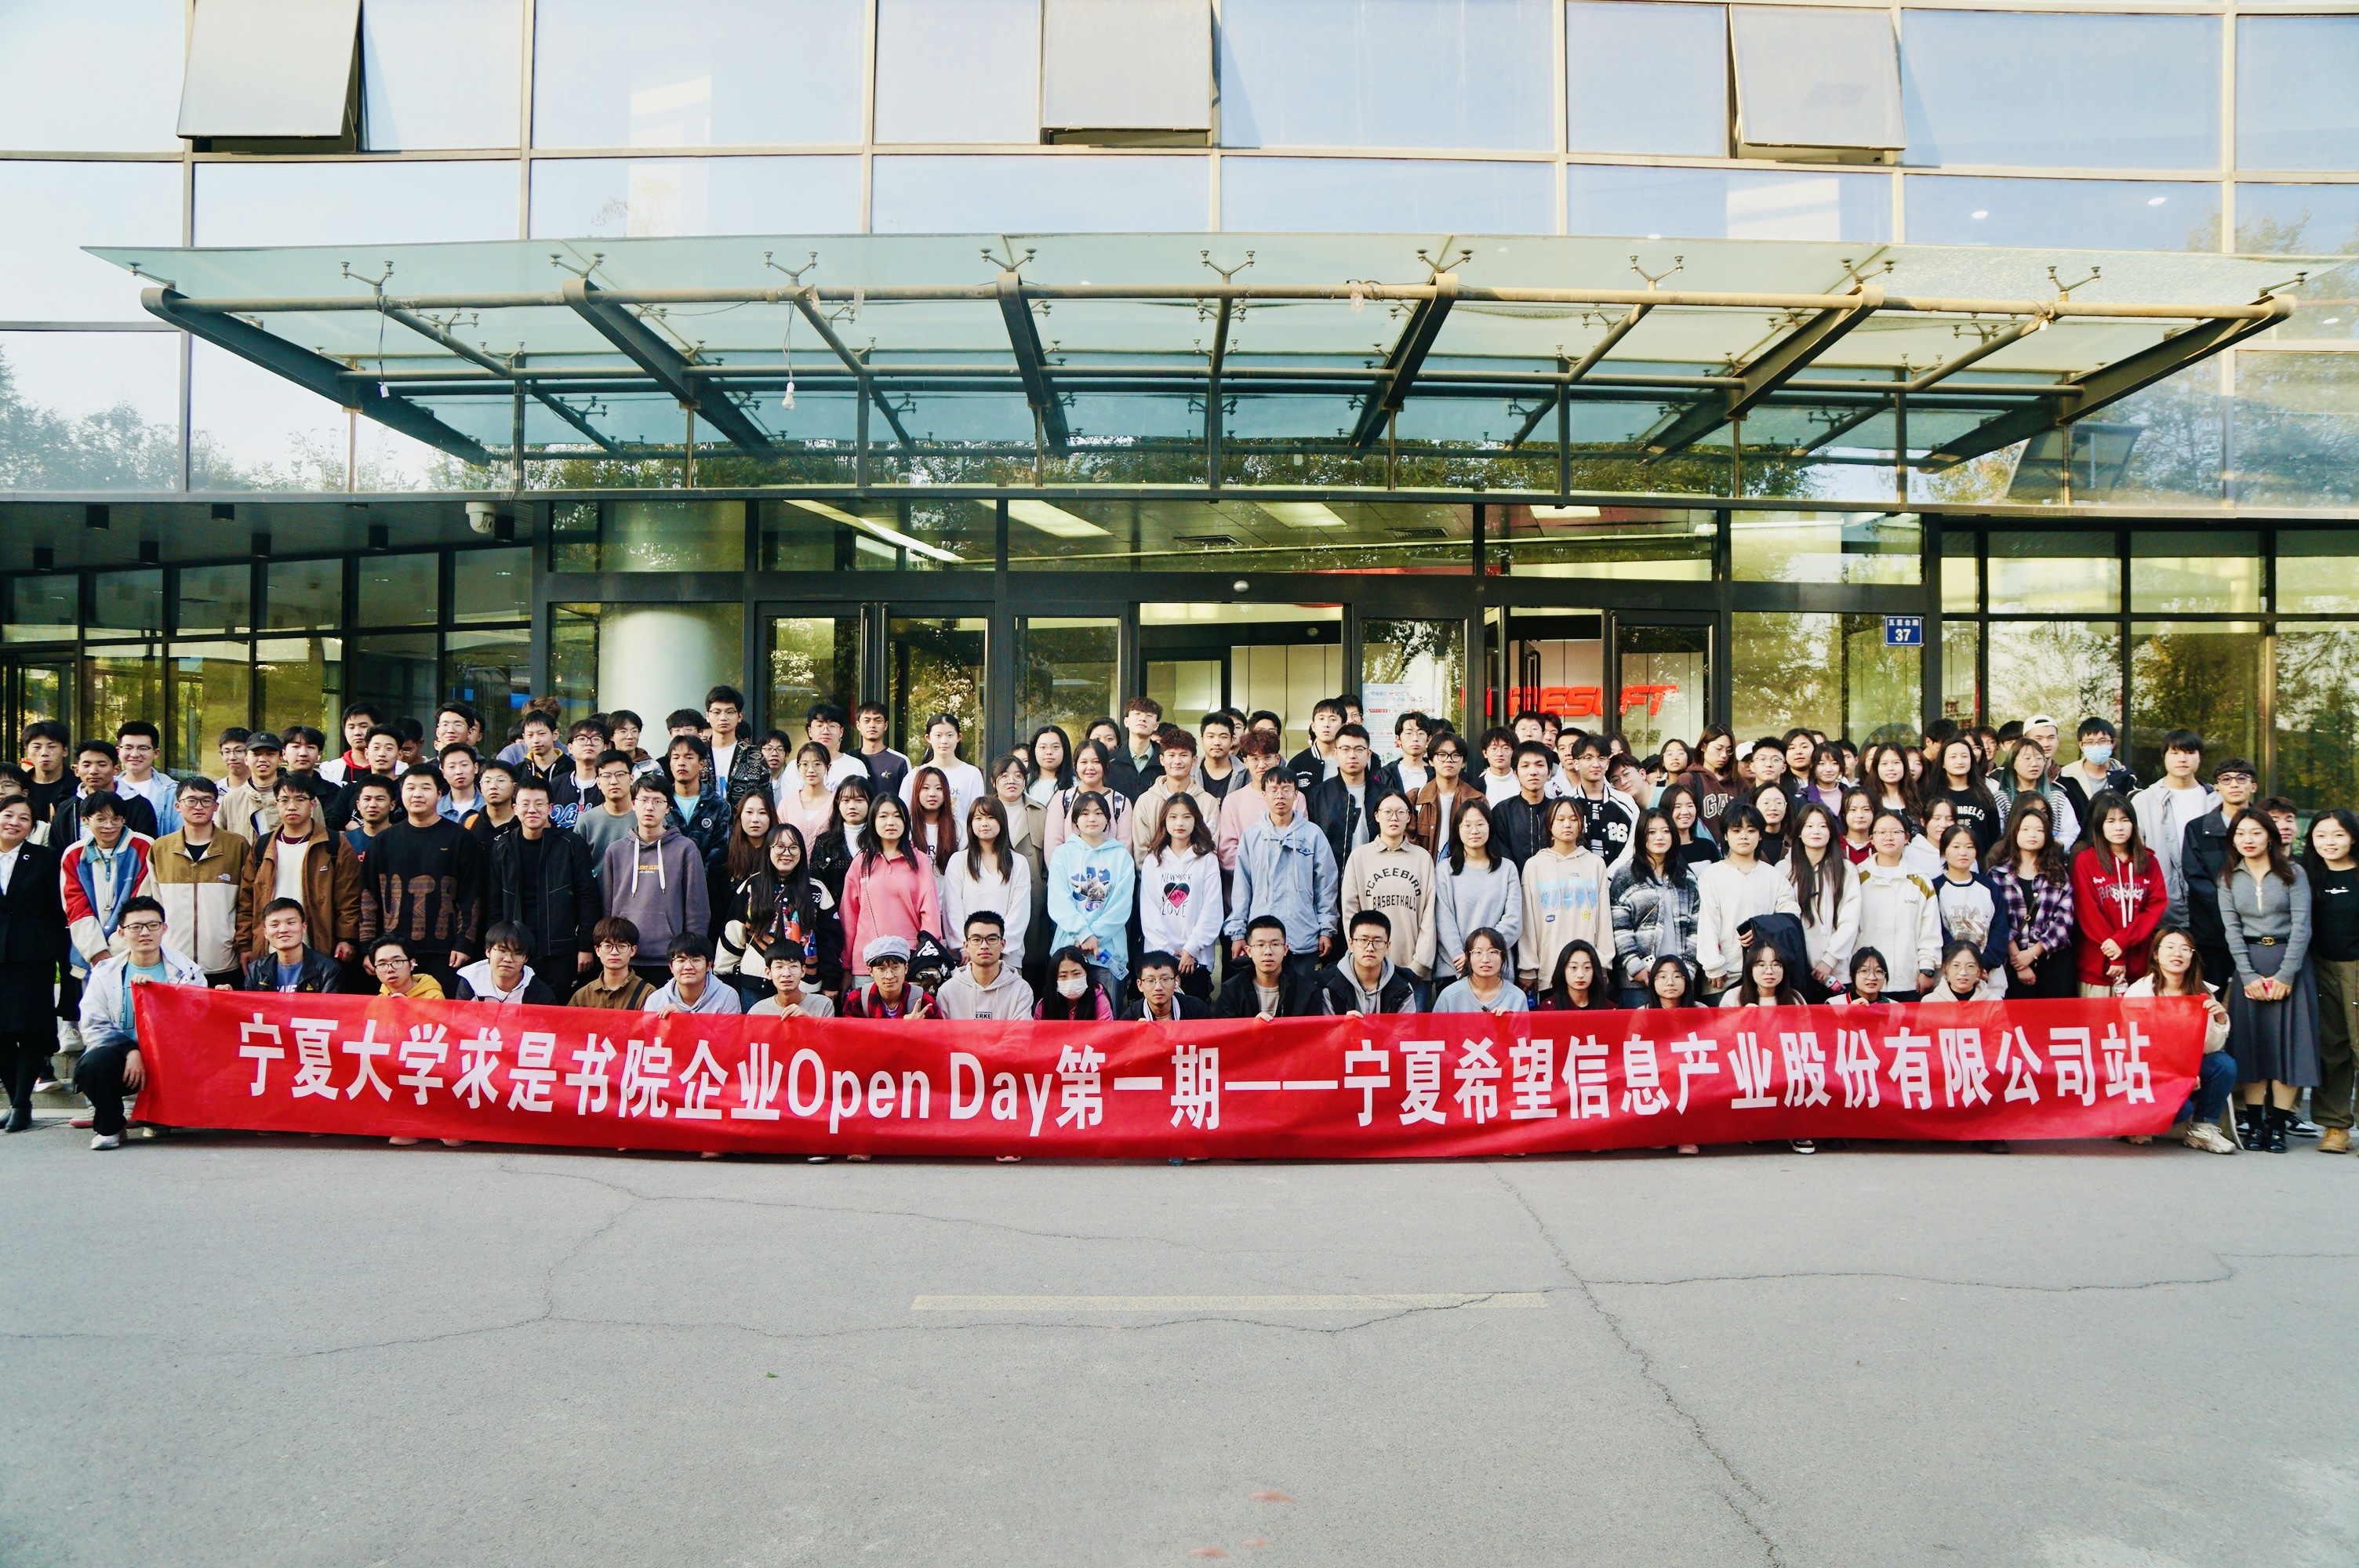 宁夏大学求是书院开展第一期企业“Open Day”活动